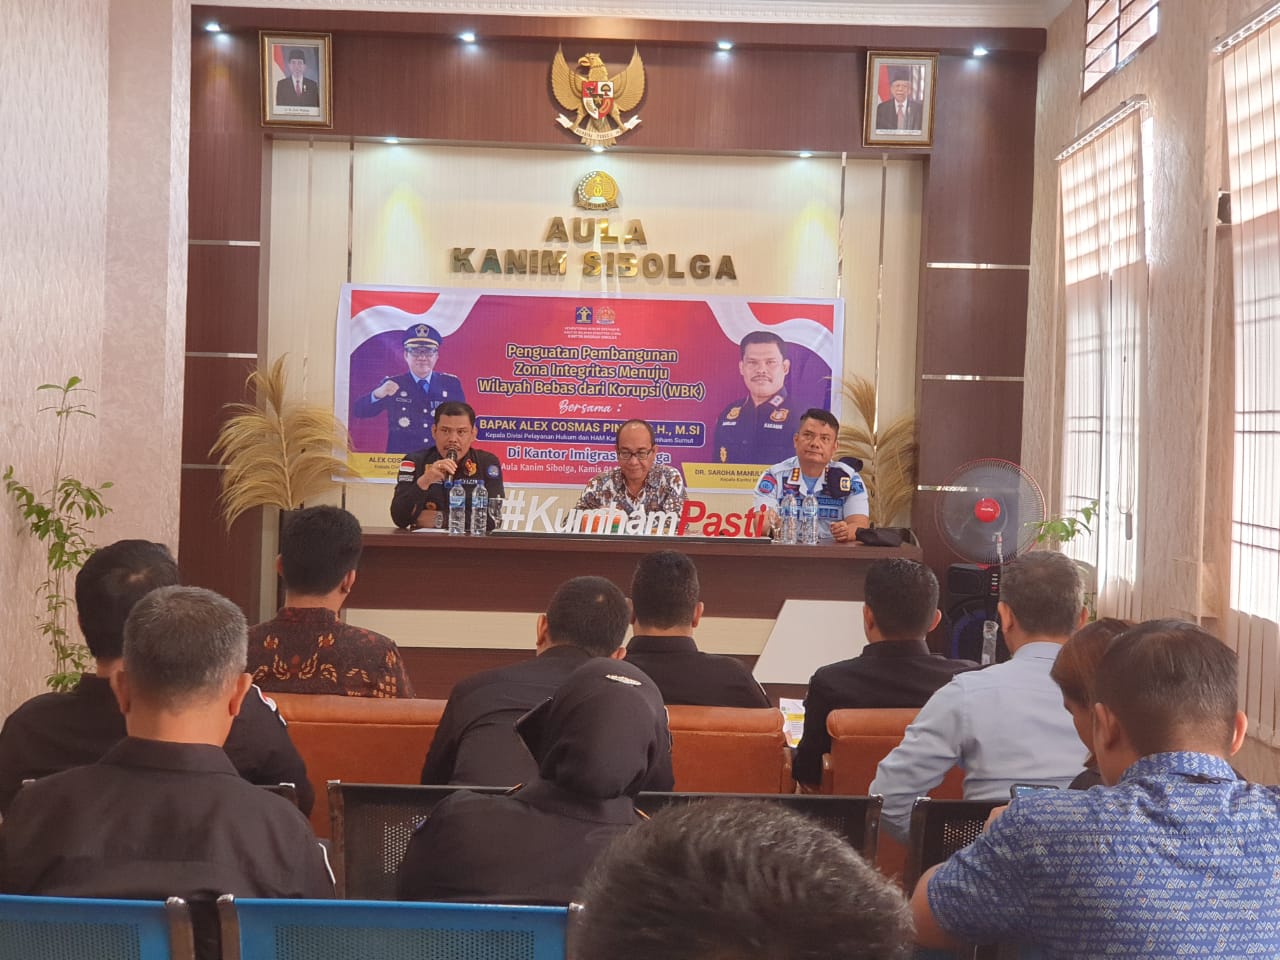 Imigrasi Sibolga Targetkan WBK, Kanwil Kumham Sumut Ingatkan Komitmen Jajaran 